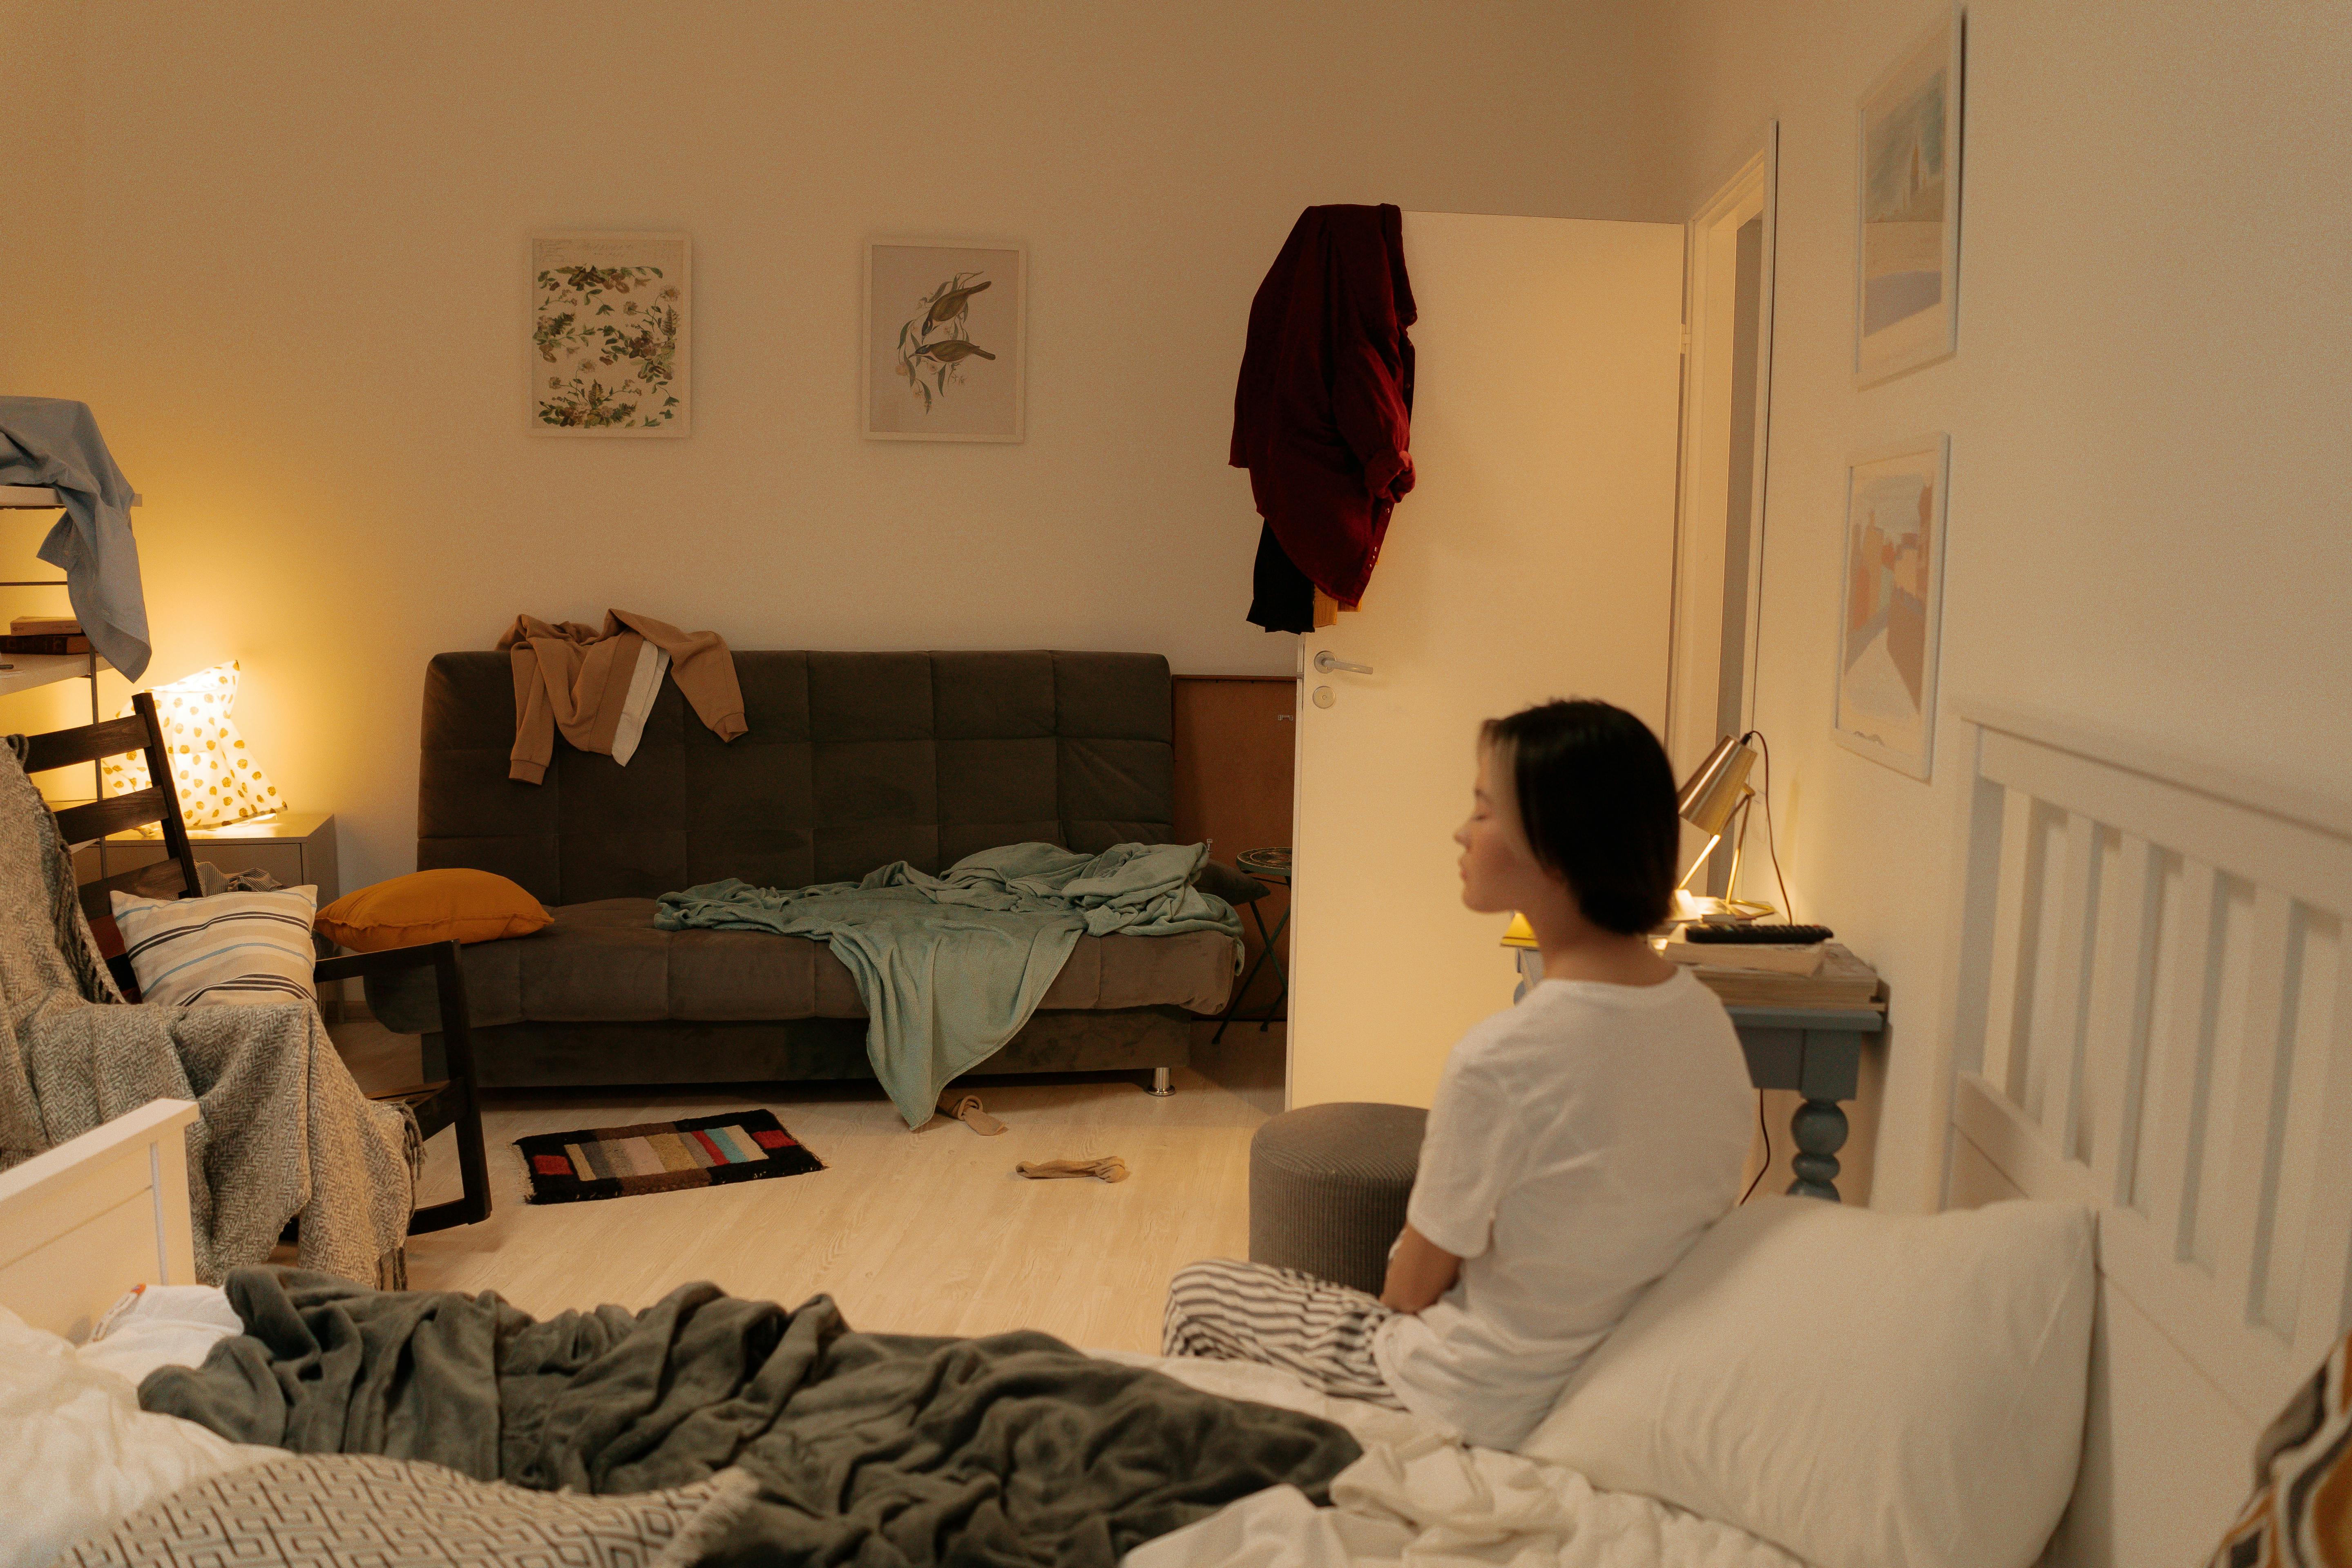 Dormitorio desordenado y mujer sentada en la cama | Foto: Pexels